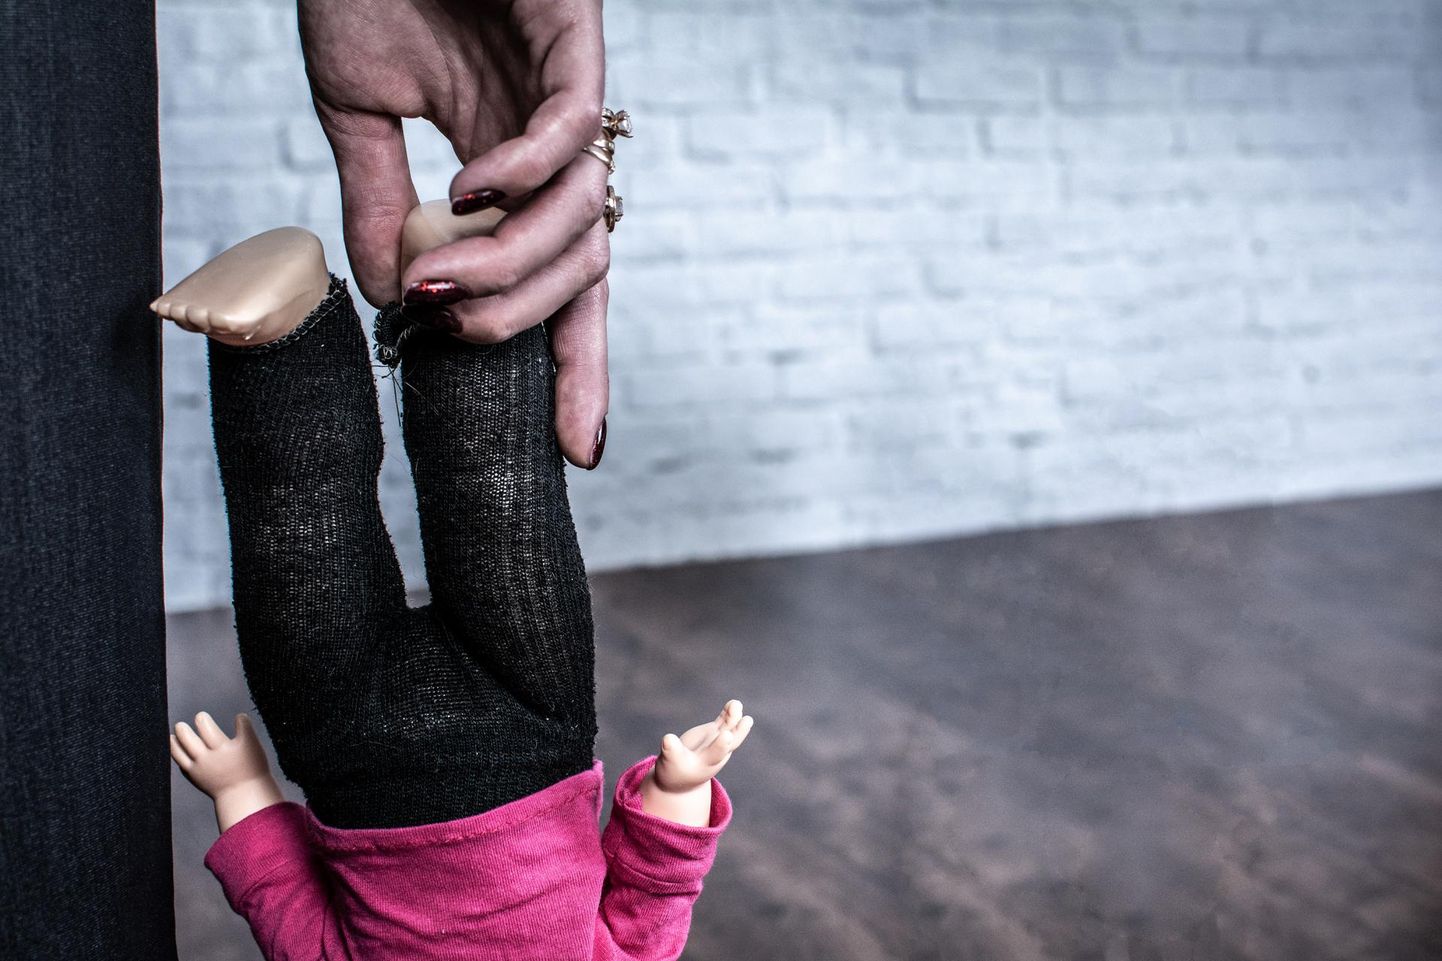 36 процентов взрослых считают физическое наказание детей не насилием, а методом воспитания.